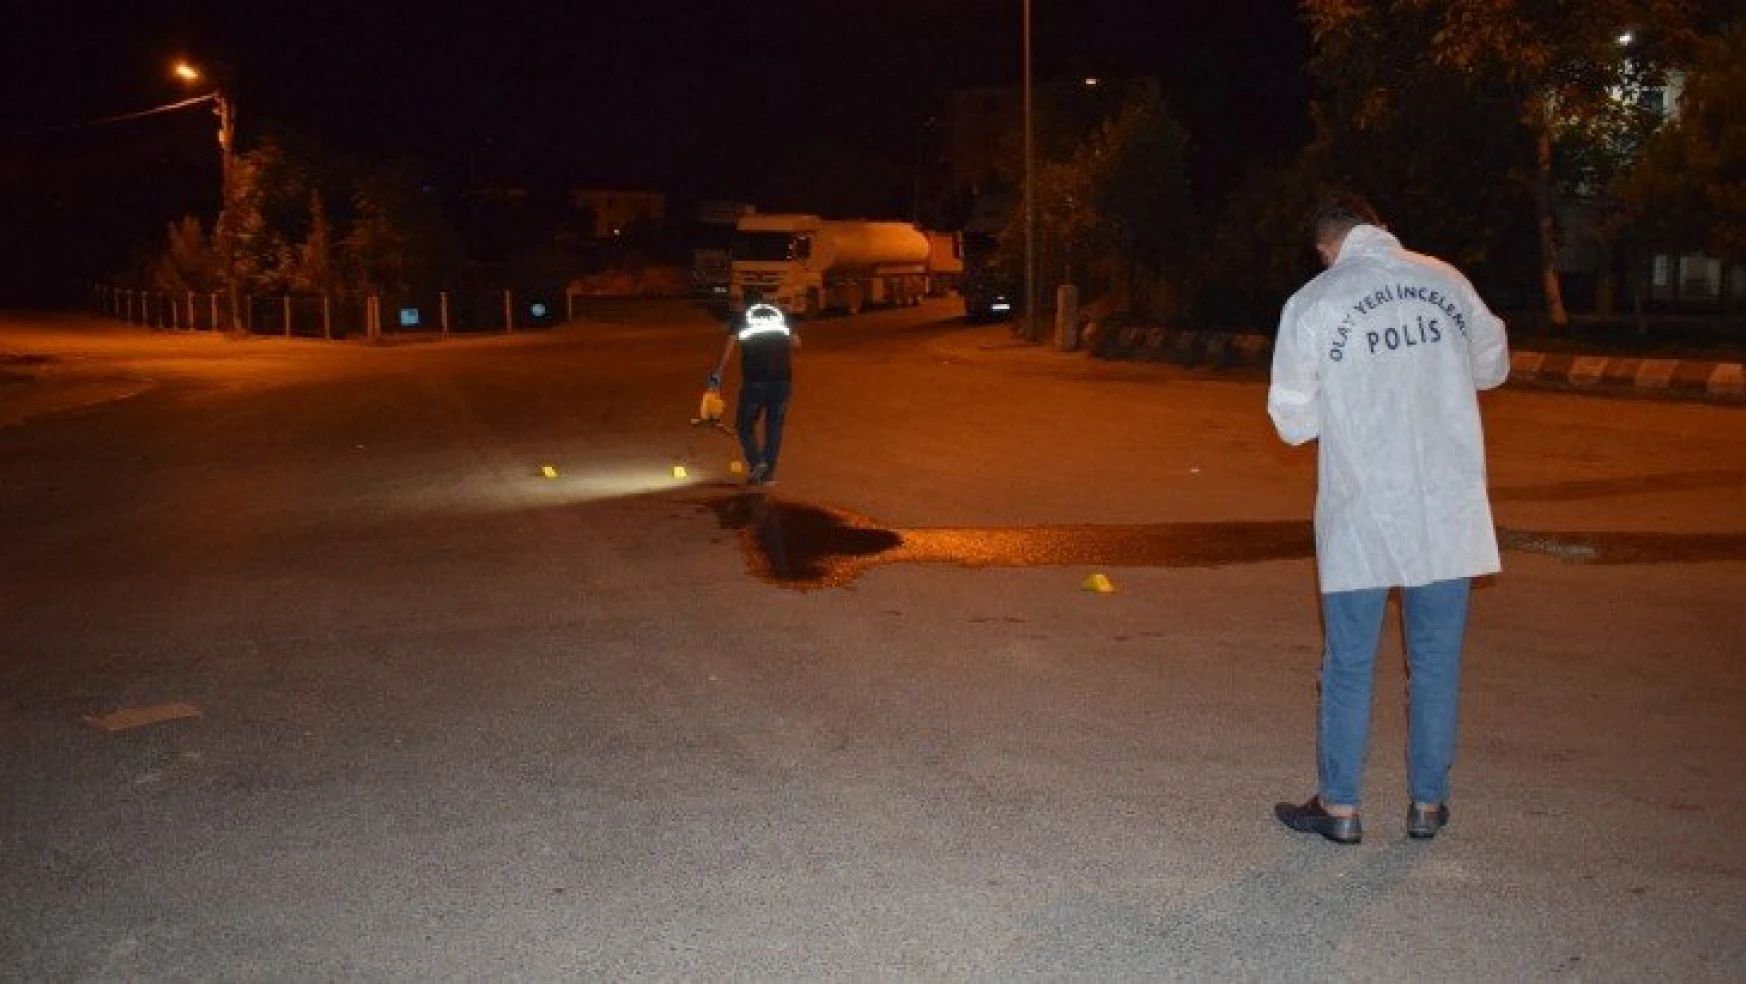 Malatya'da laf atma kavgasında 2 kardeş yaralandı